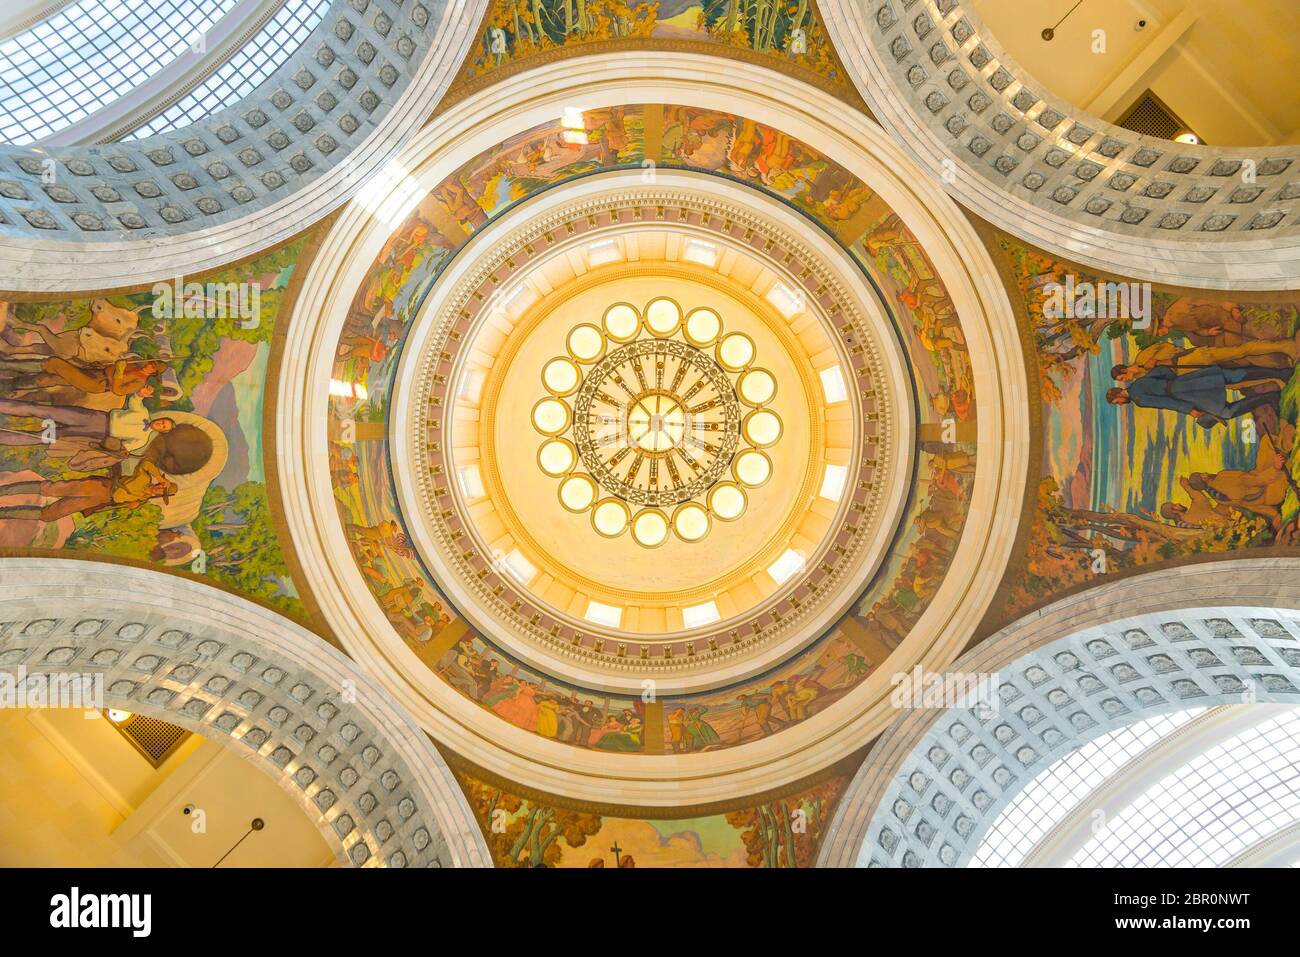 Szenische Ansicht des Innenraums des Kuppeldaches in der Salt Lake City Hall, Utah, usa. Dreharbeiten in 28/06/15 - nur für redaktionelle Verwendung. Stockfoto